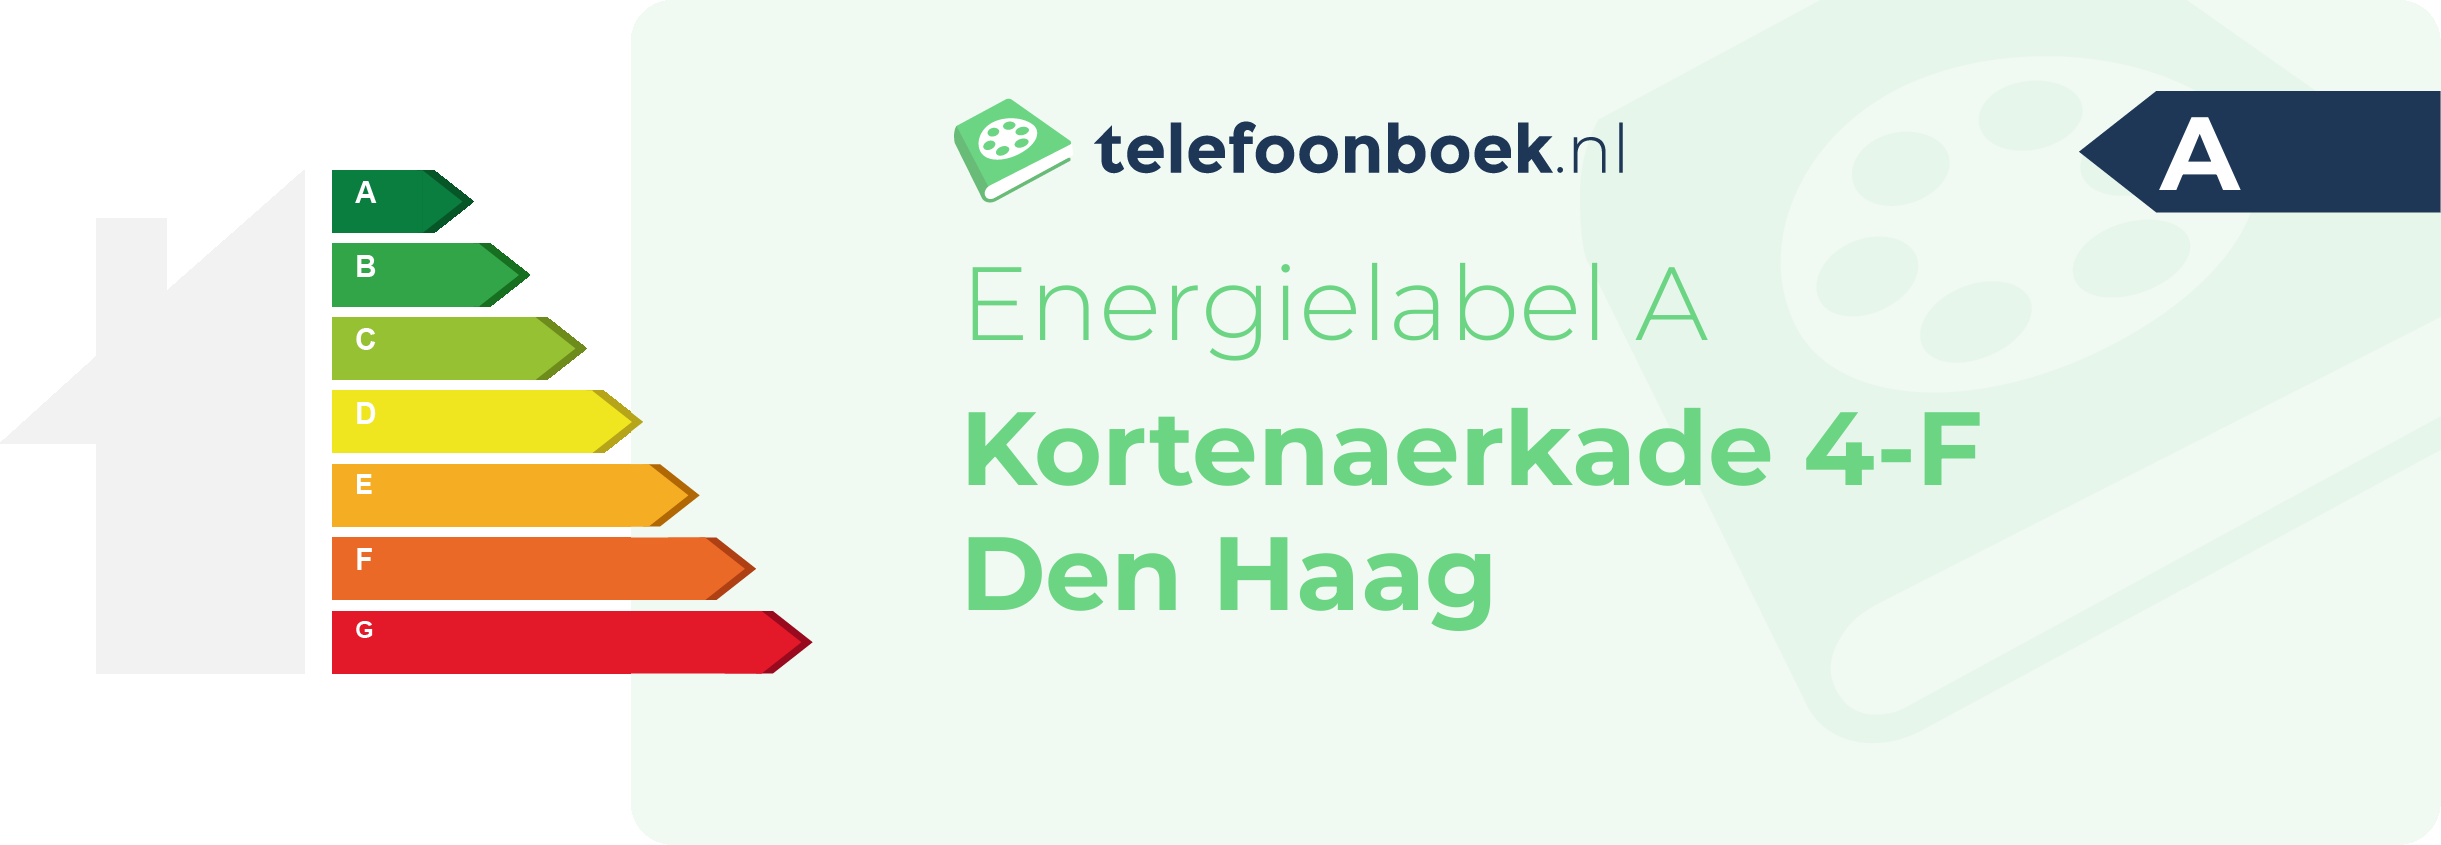 Energielabel Kortenaerkade 4-F Den Haag